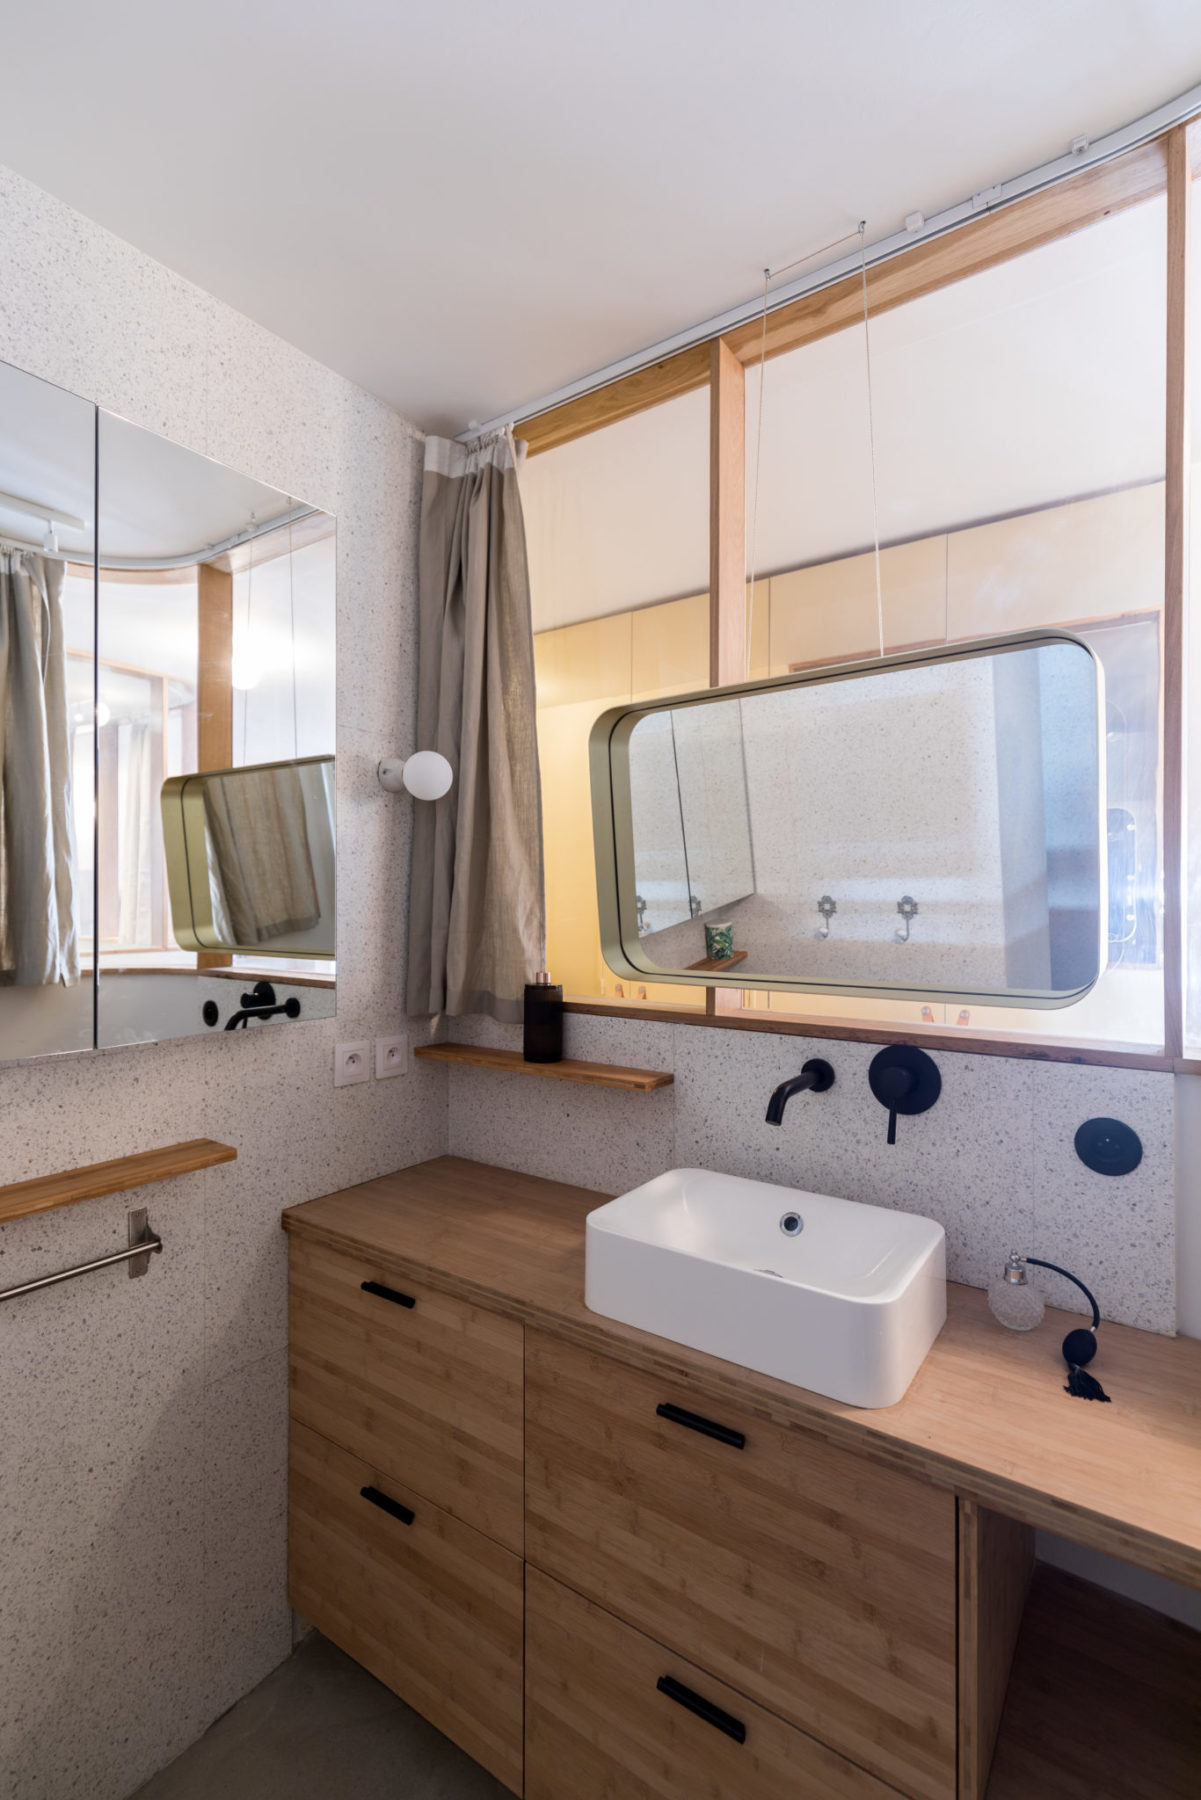 Salle de bains - Miroir suspendu, mur en terrazzo blanc. Meuble /commode en bambou avec vasque